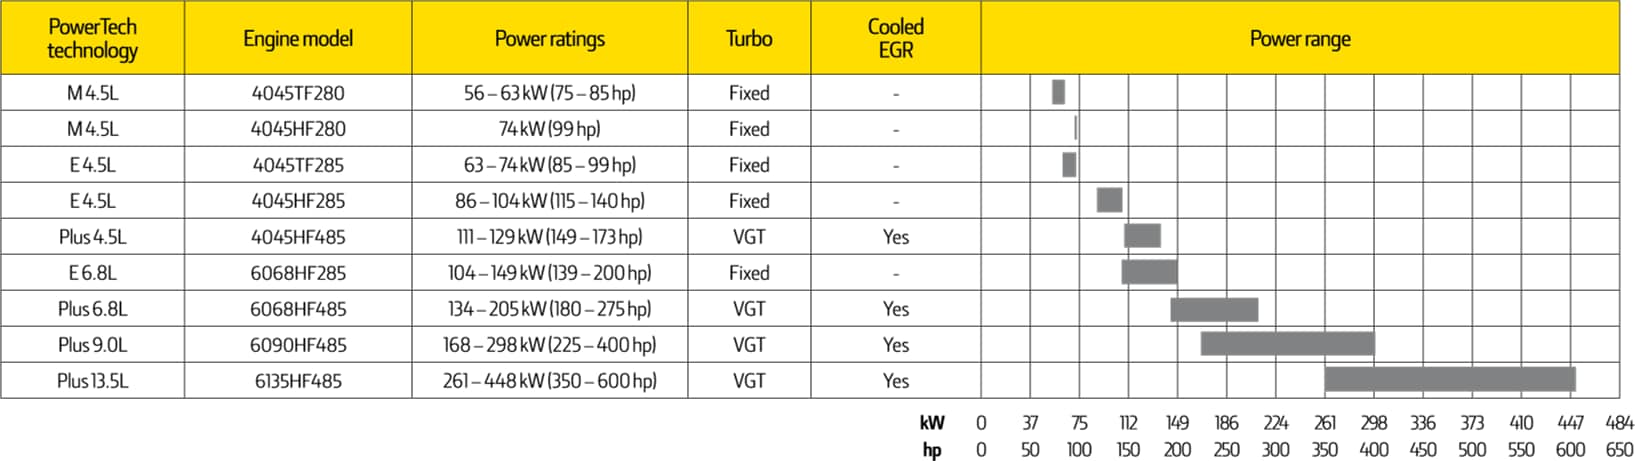 Tabel motoren voor Tier 3